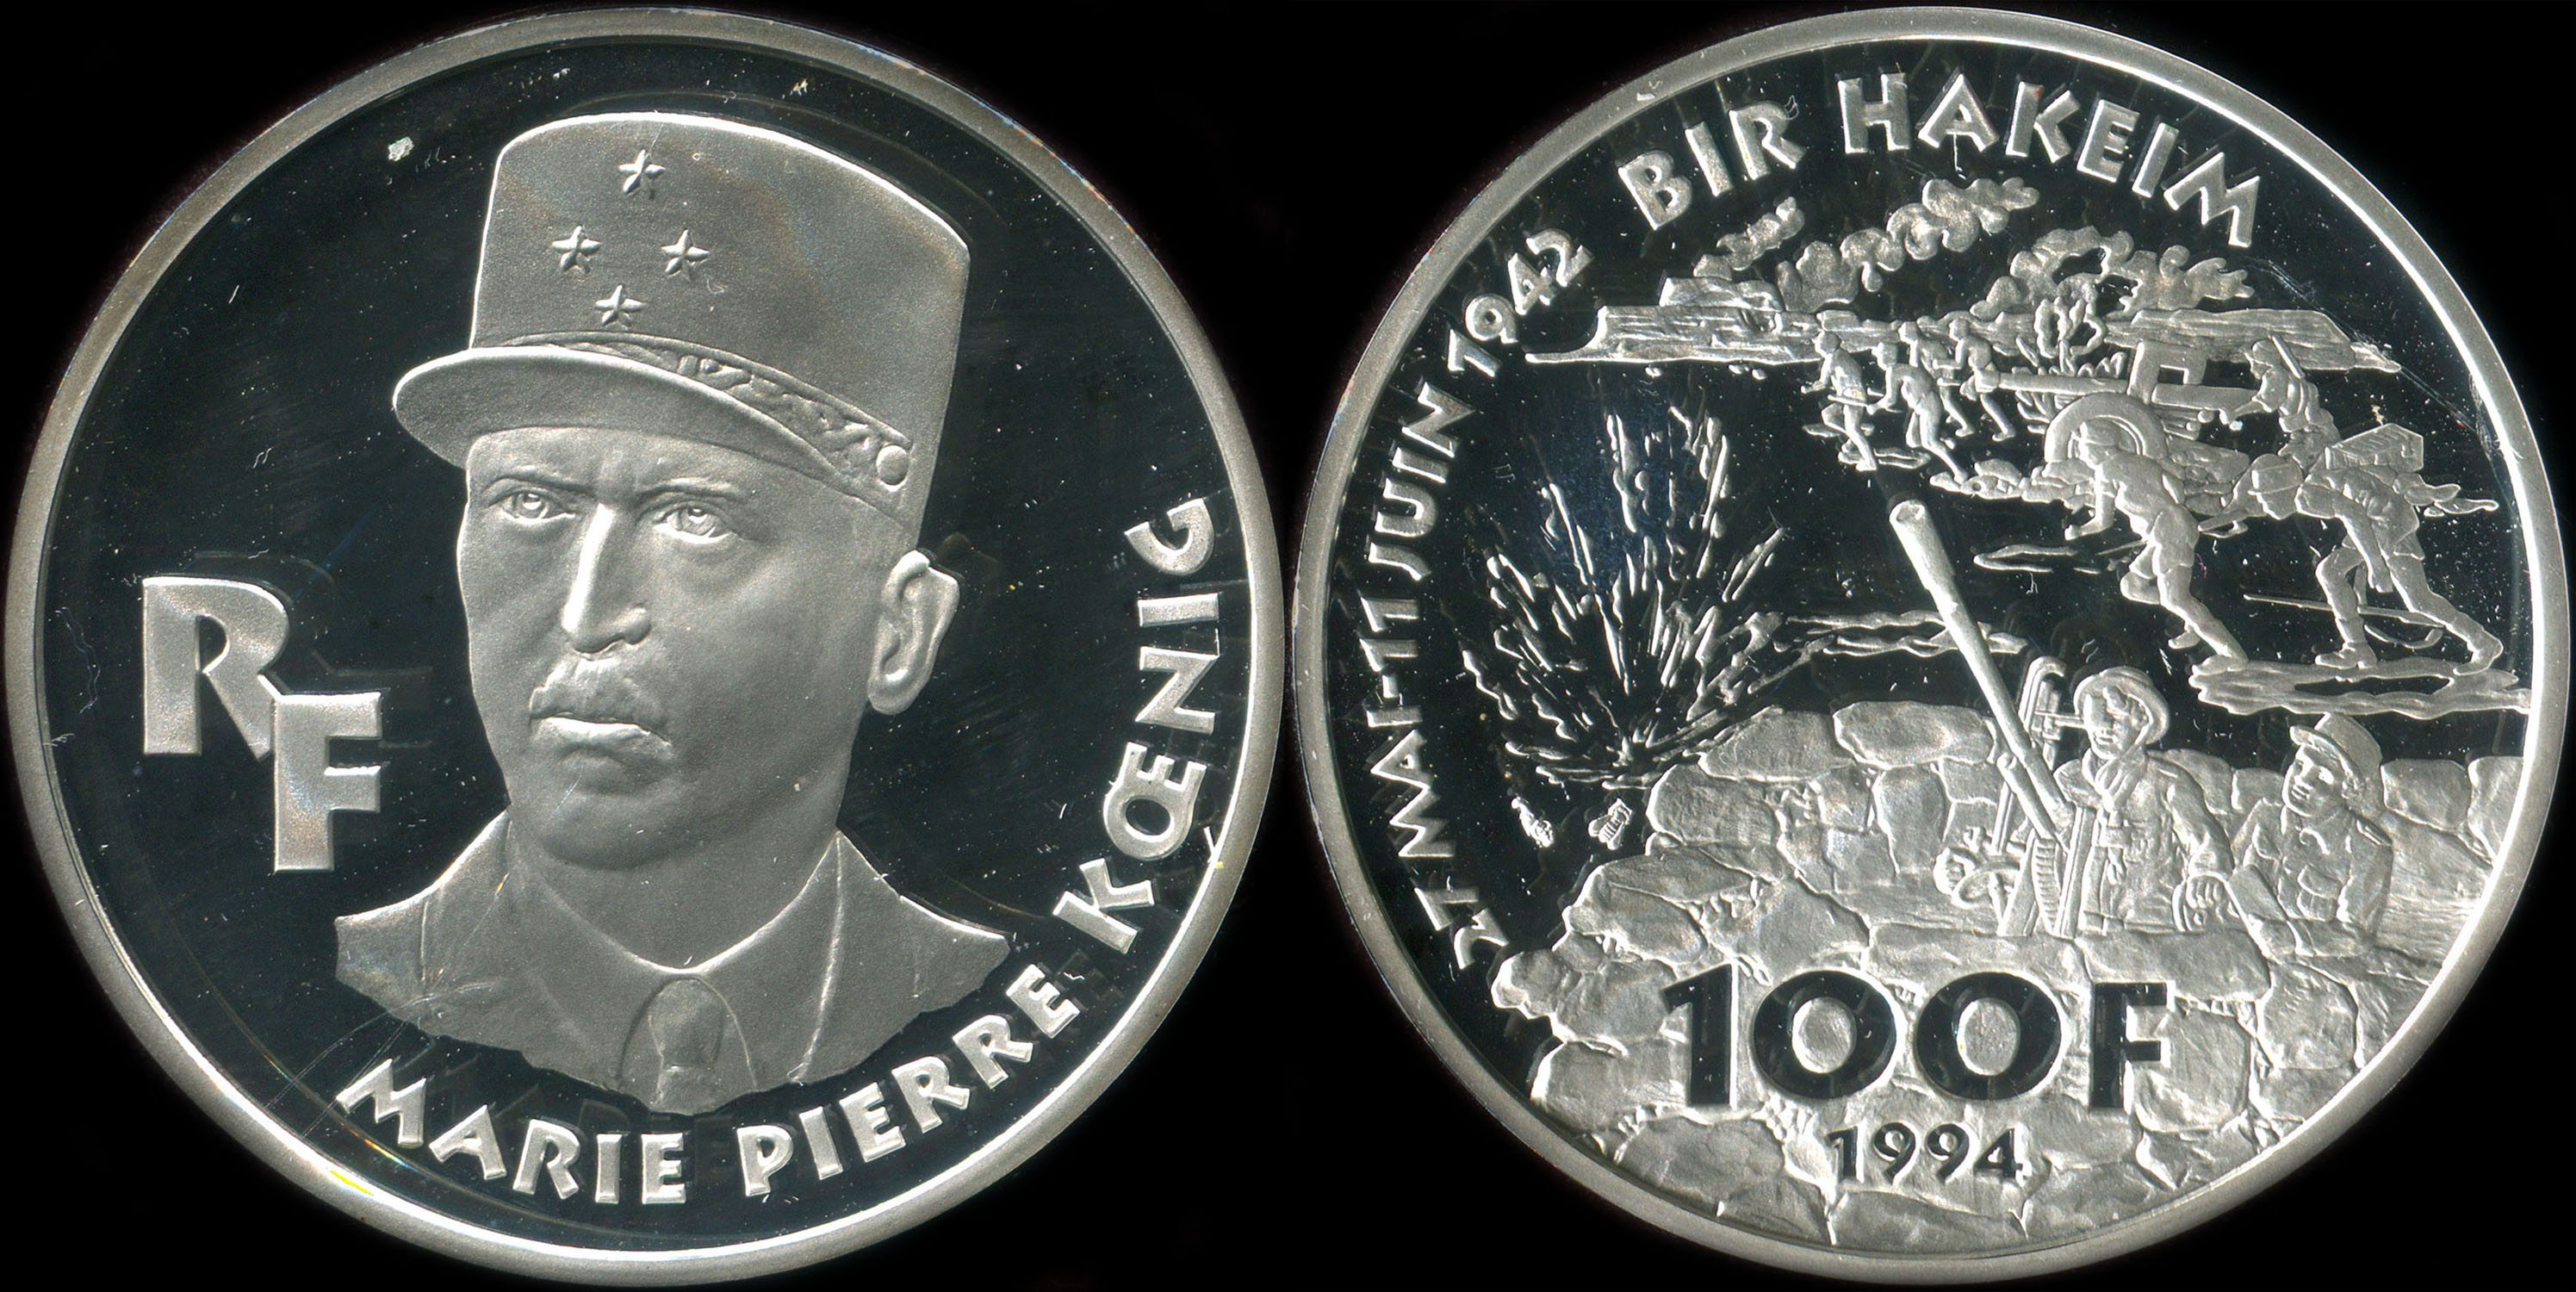 Pice de 100 francs 1994 - La Libert retrouve - Marie Pierre Koenig - 27 mai - 11 juin 1942 - Bir Hakeim